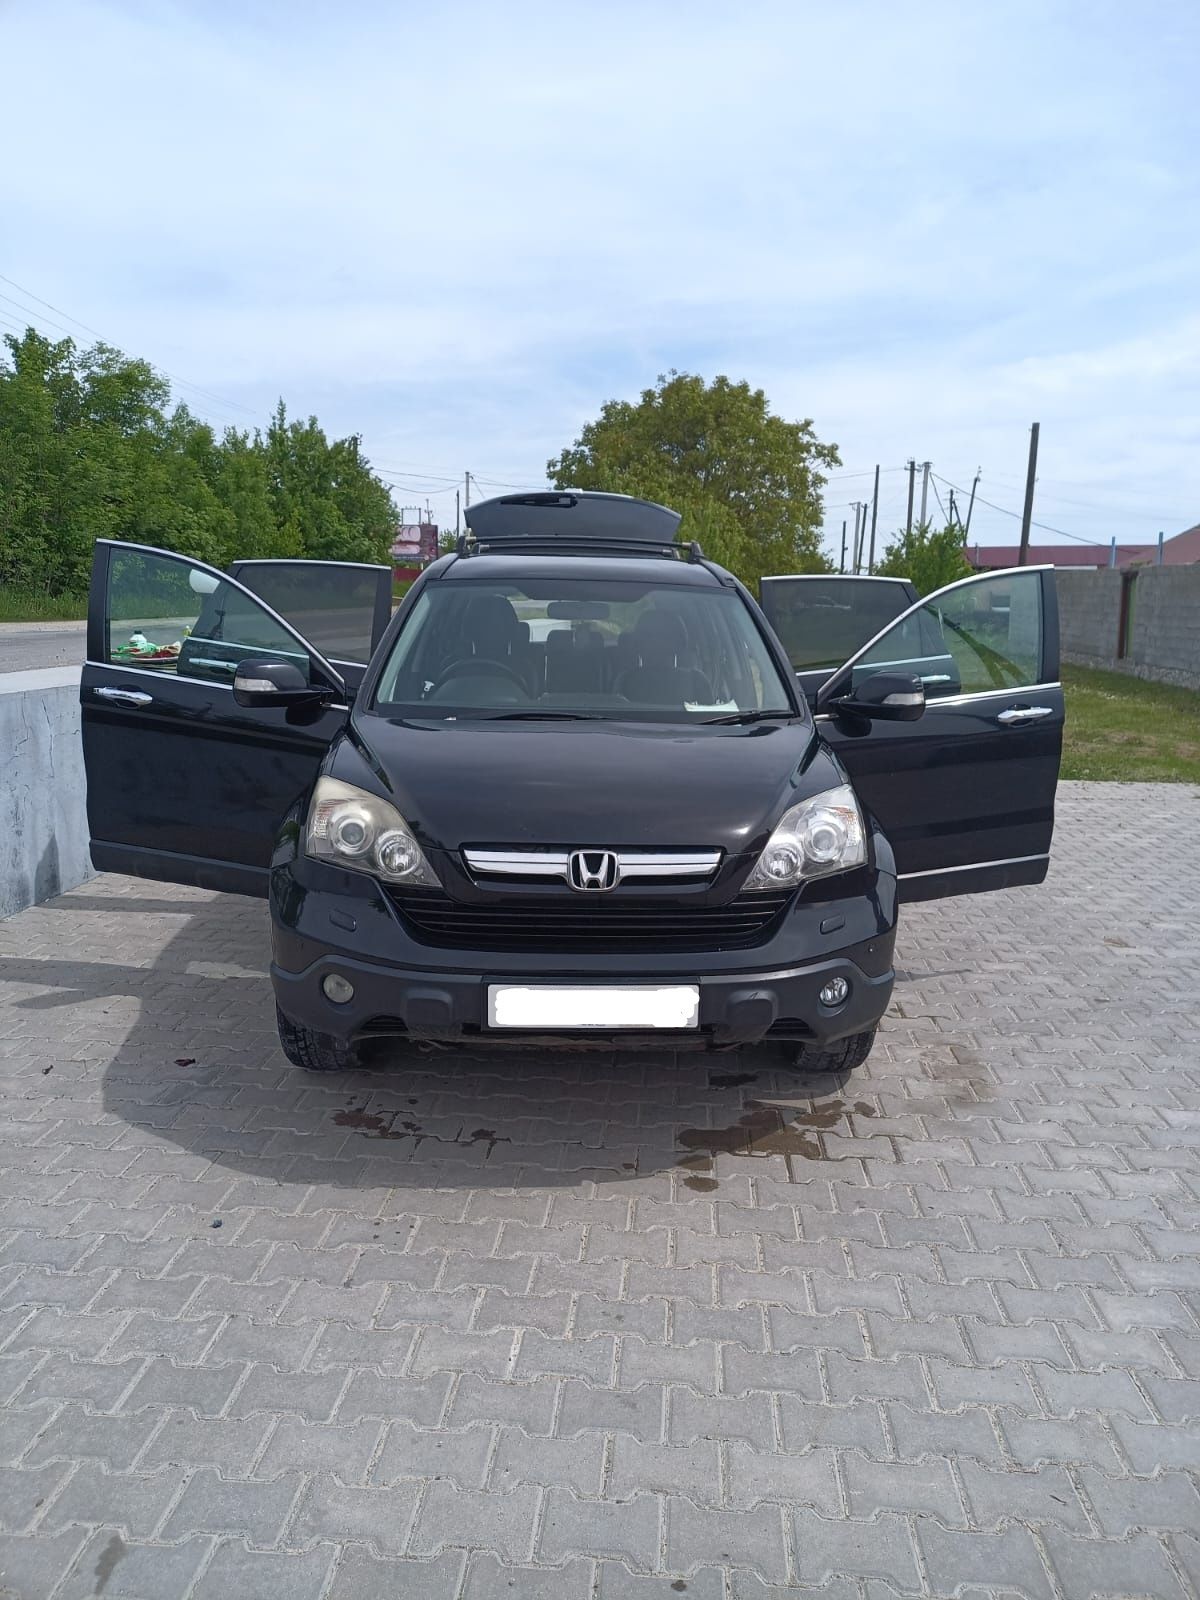 Honda CR-V 2008 2.2 diesel в Україні!